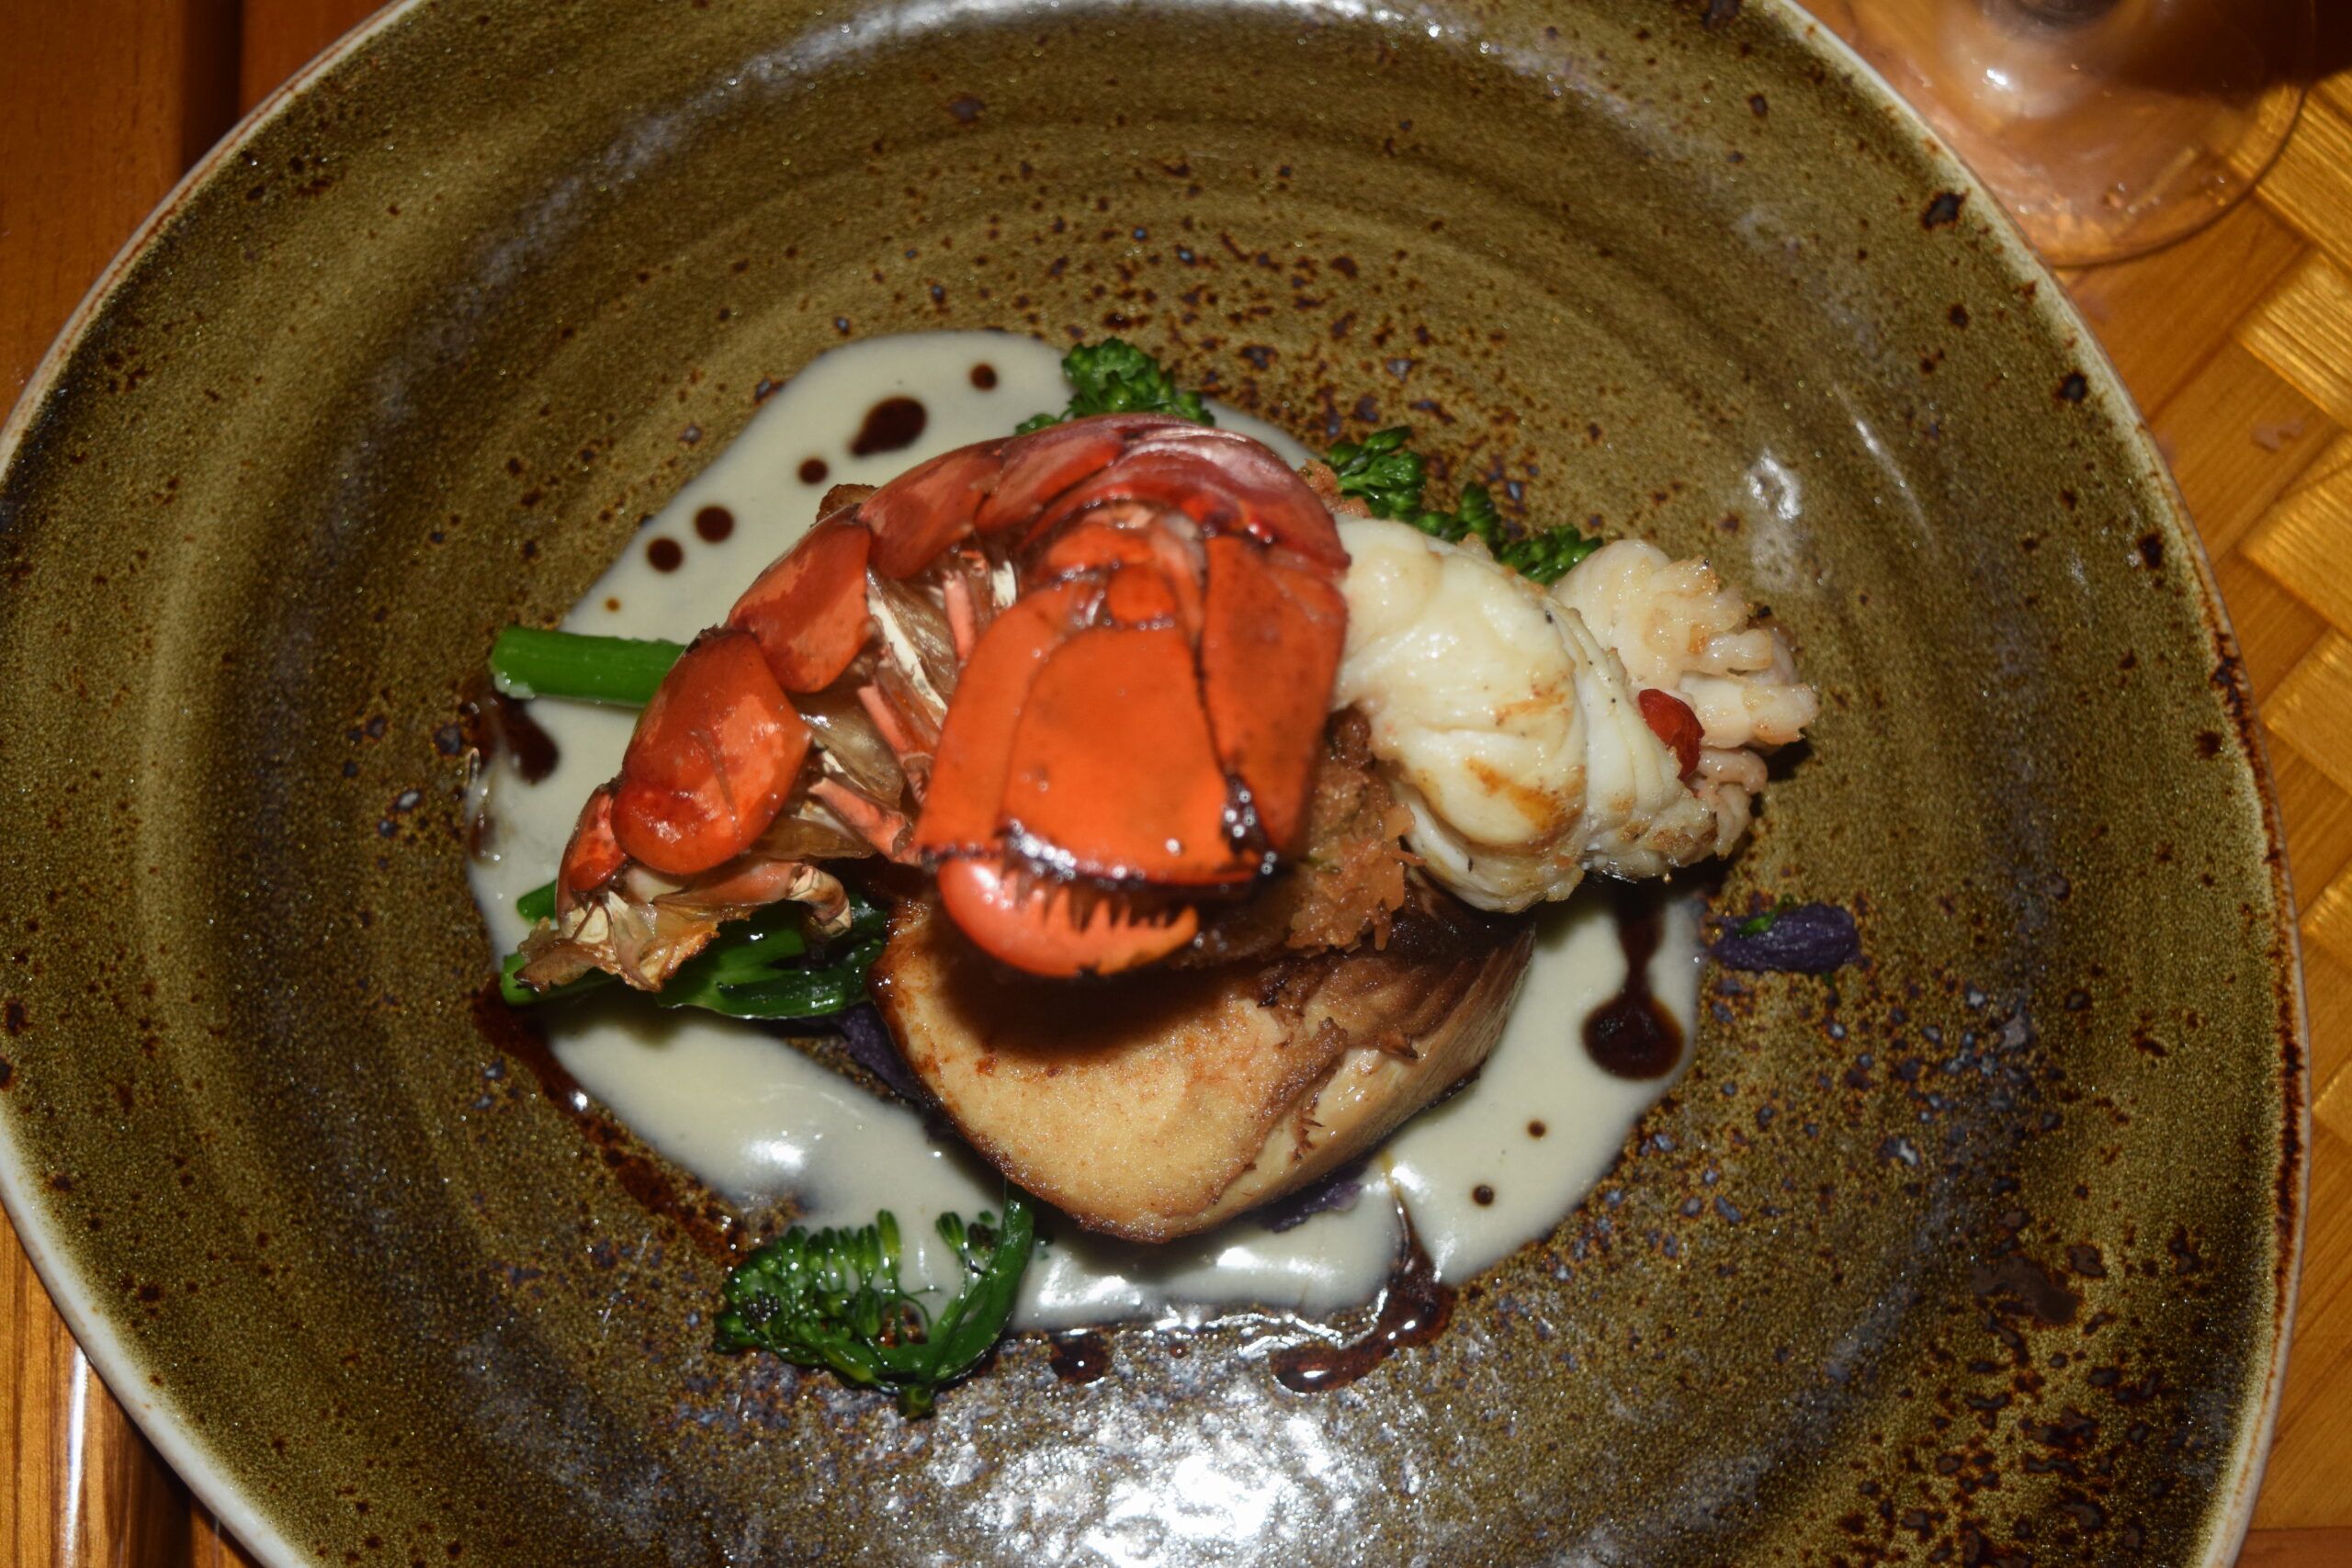 Lobster dish at Tidepools